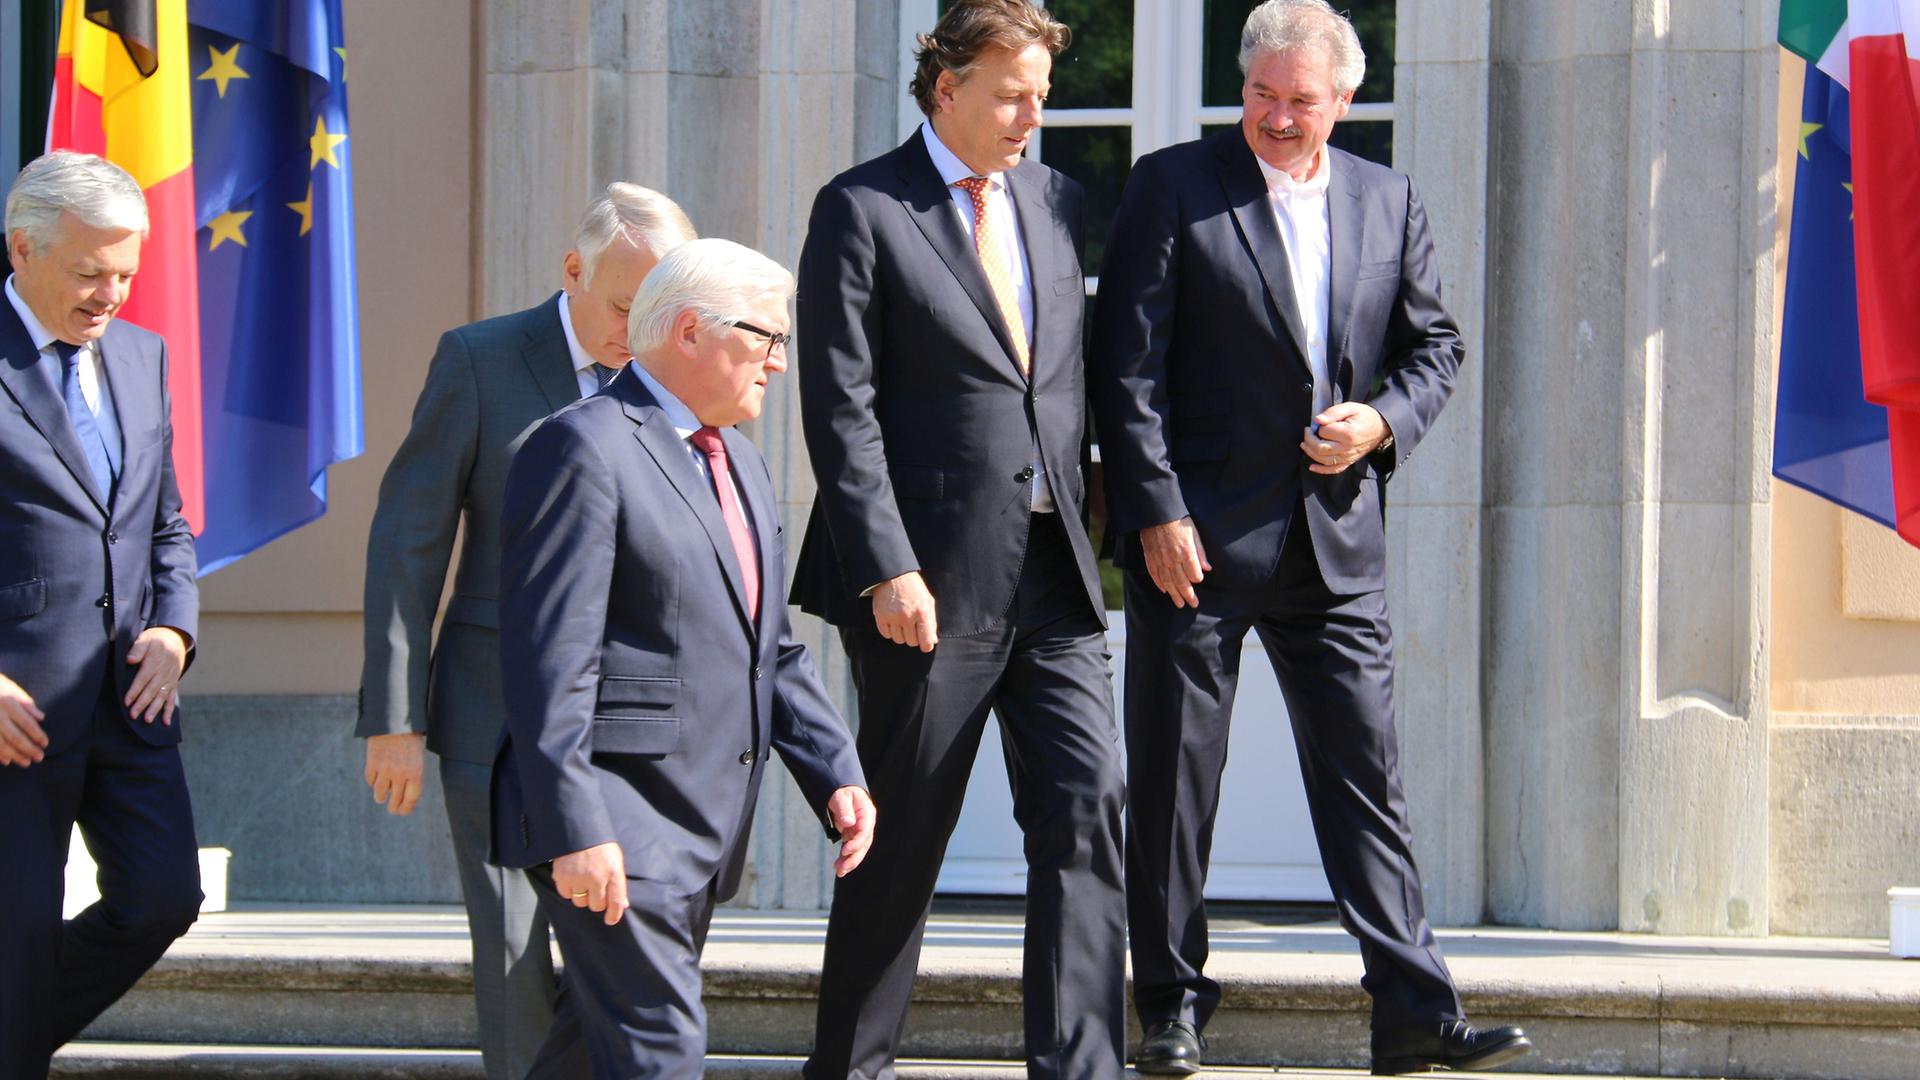 Jean Asselborn avec ses homologues, ées ministres des Affaires étrangères de l'Allemagne, la Belgique, la France, de l’Italie, et des Pays-Bas